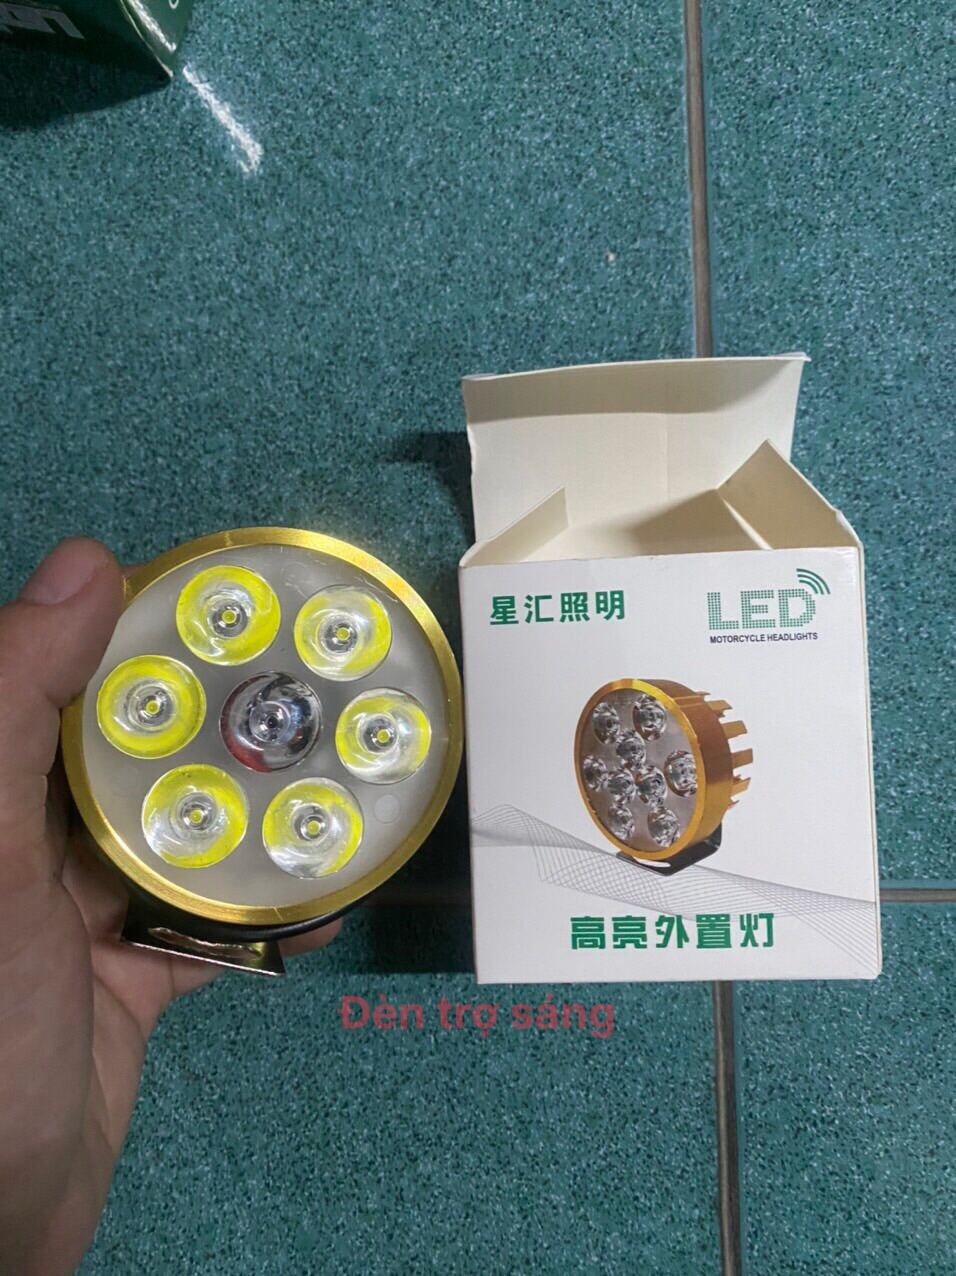 Đèn trợ sáng, đèn led 6 bóng vàng 48v chuyên dùng trợ sáng cho các dòng xe điện, xe đạp điện